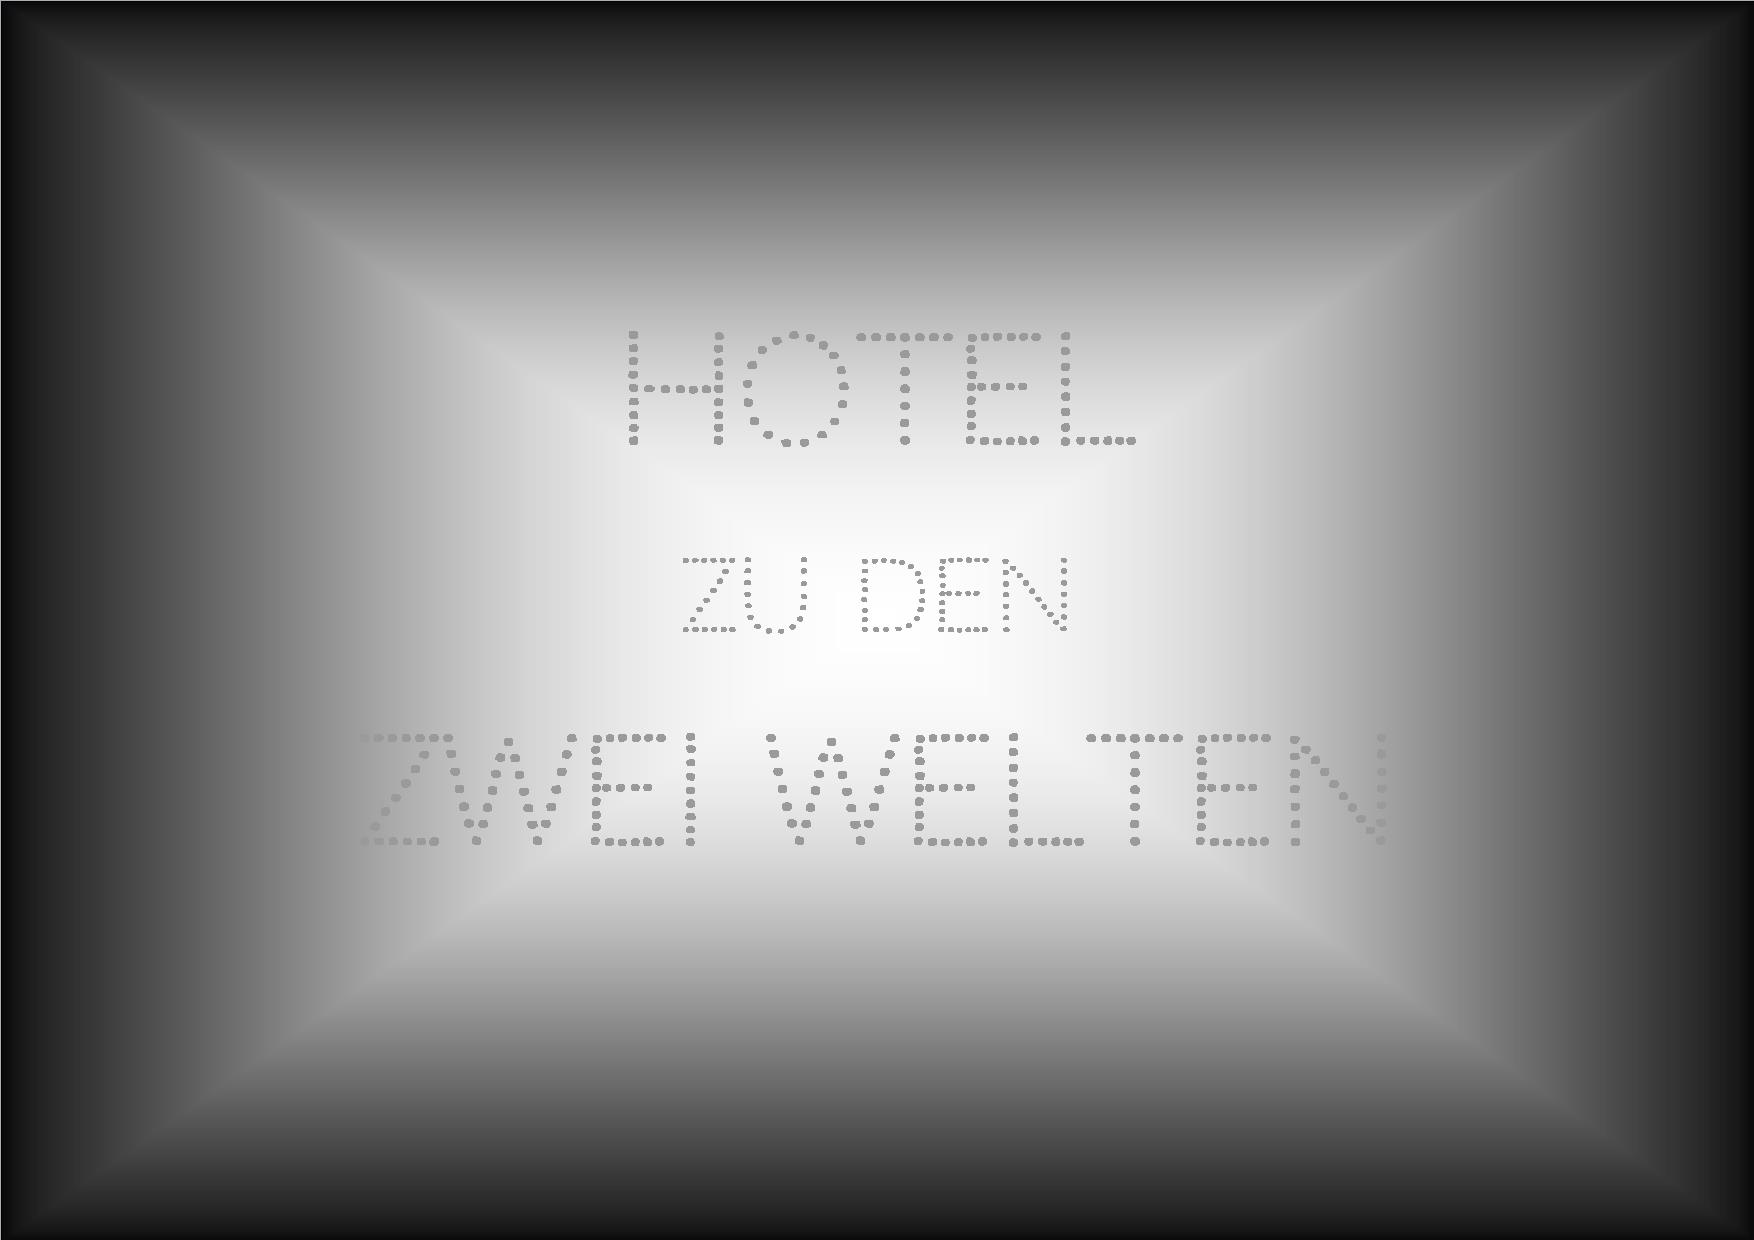 Hotel zu den zwei Welten (Hotel des deux mondes)